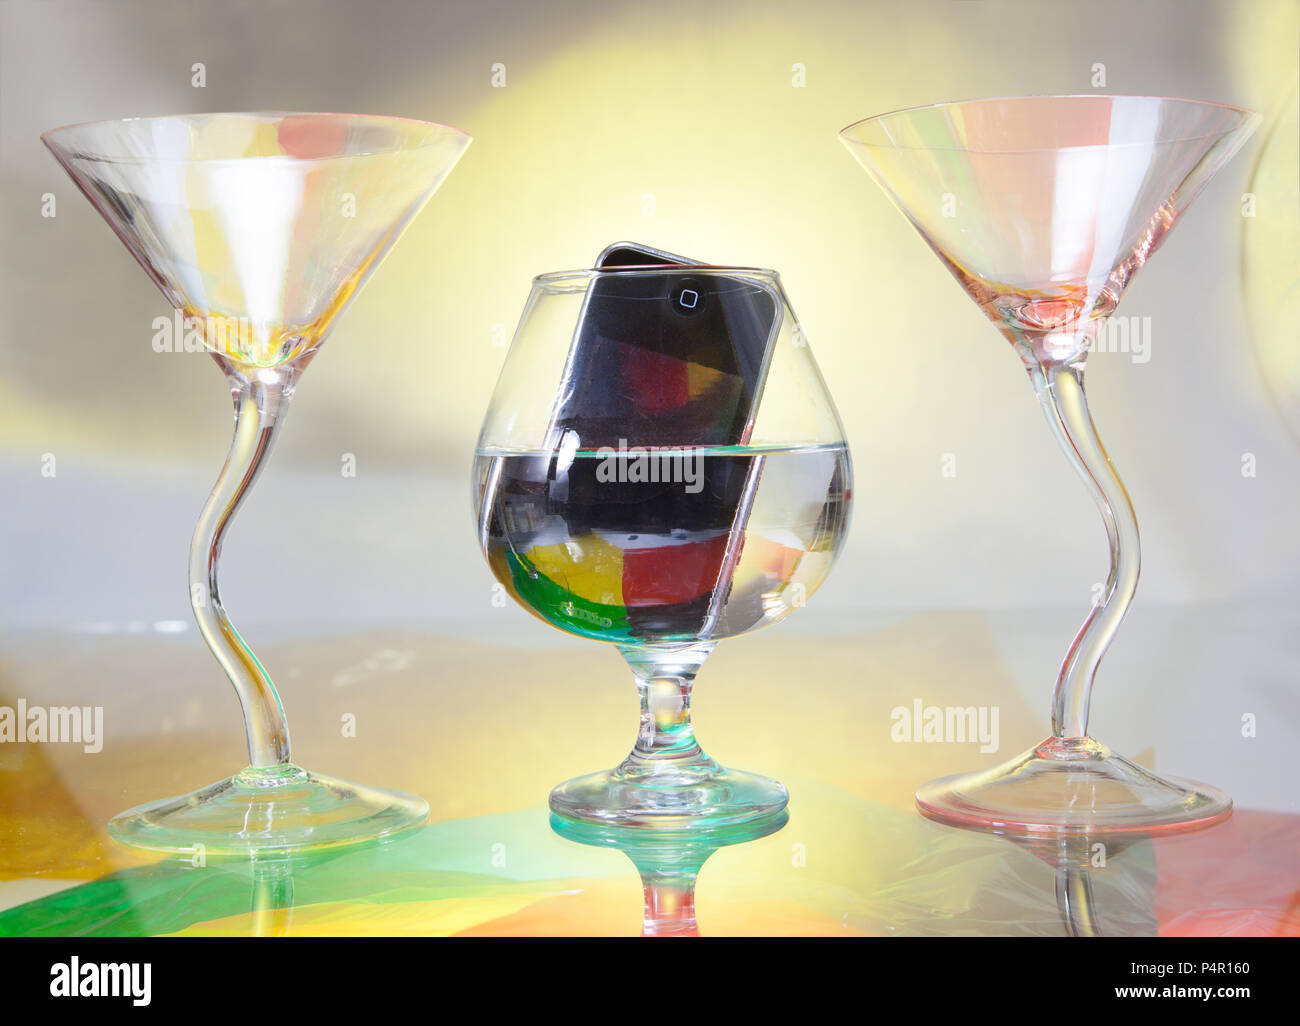 In der Mitte sehen Sie einen Schnaps Glas, in dem ein Handy eingetaucht ist. Zwei Cocktailgläser Rahmen der Szene Stockfoto